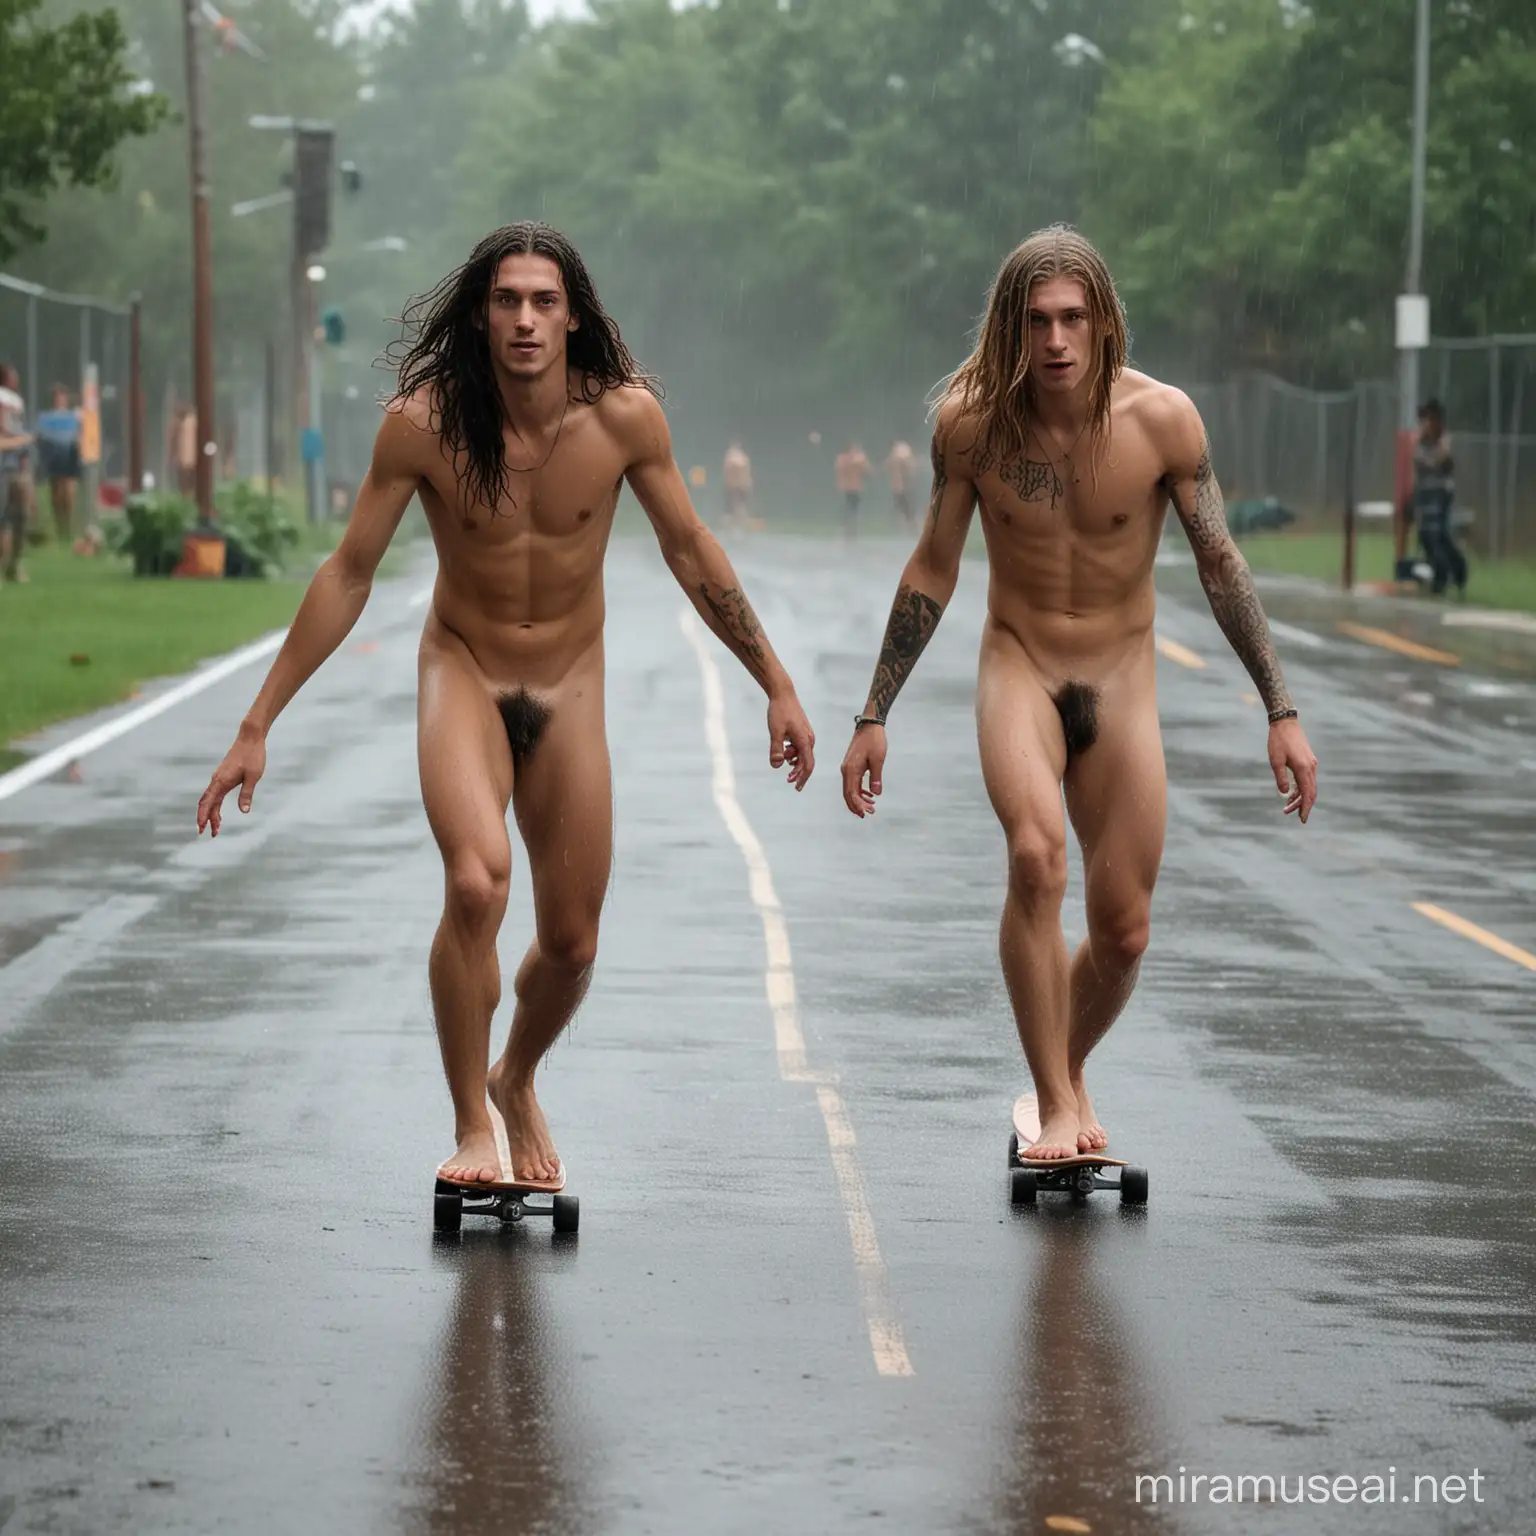 Em pista de skate, dois jovens nus, cabelos longos, tatuados, e descalços manobram seus skate. Agachados, braços abertos. Cena de ação. Corpos molhados. Chovendo.